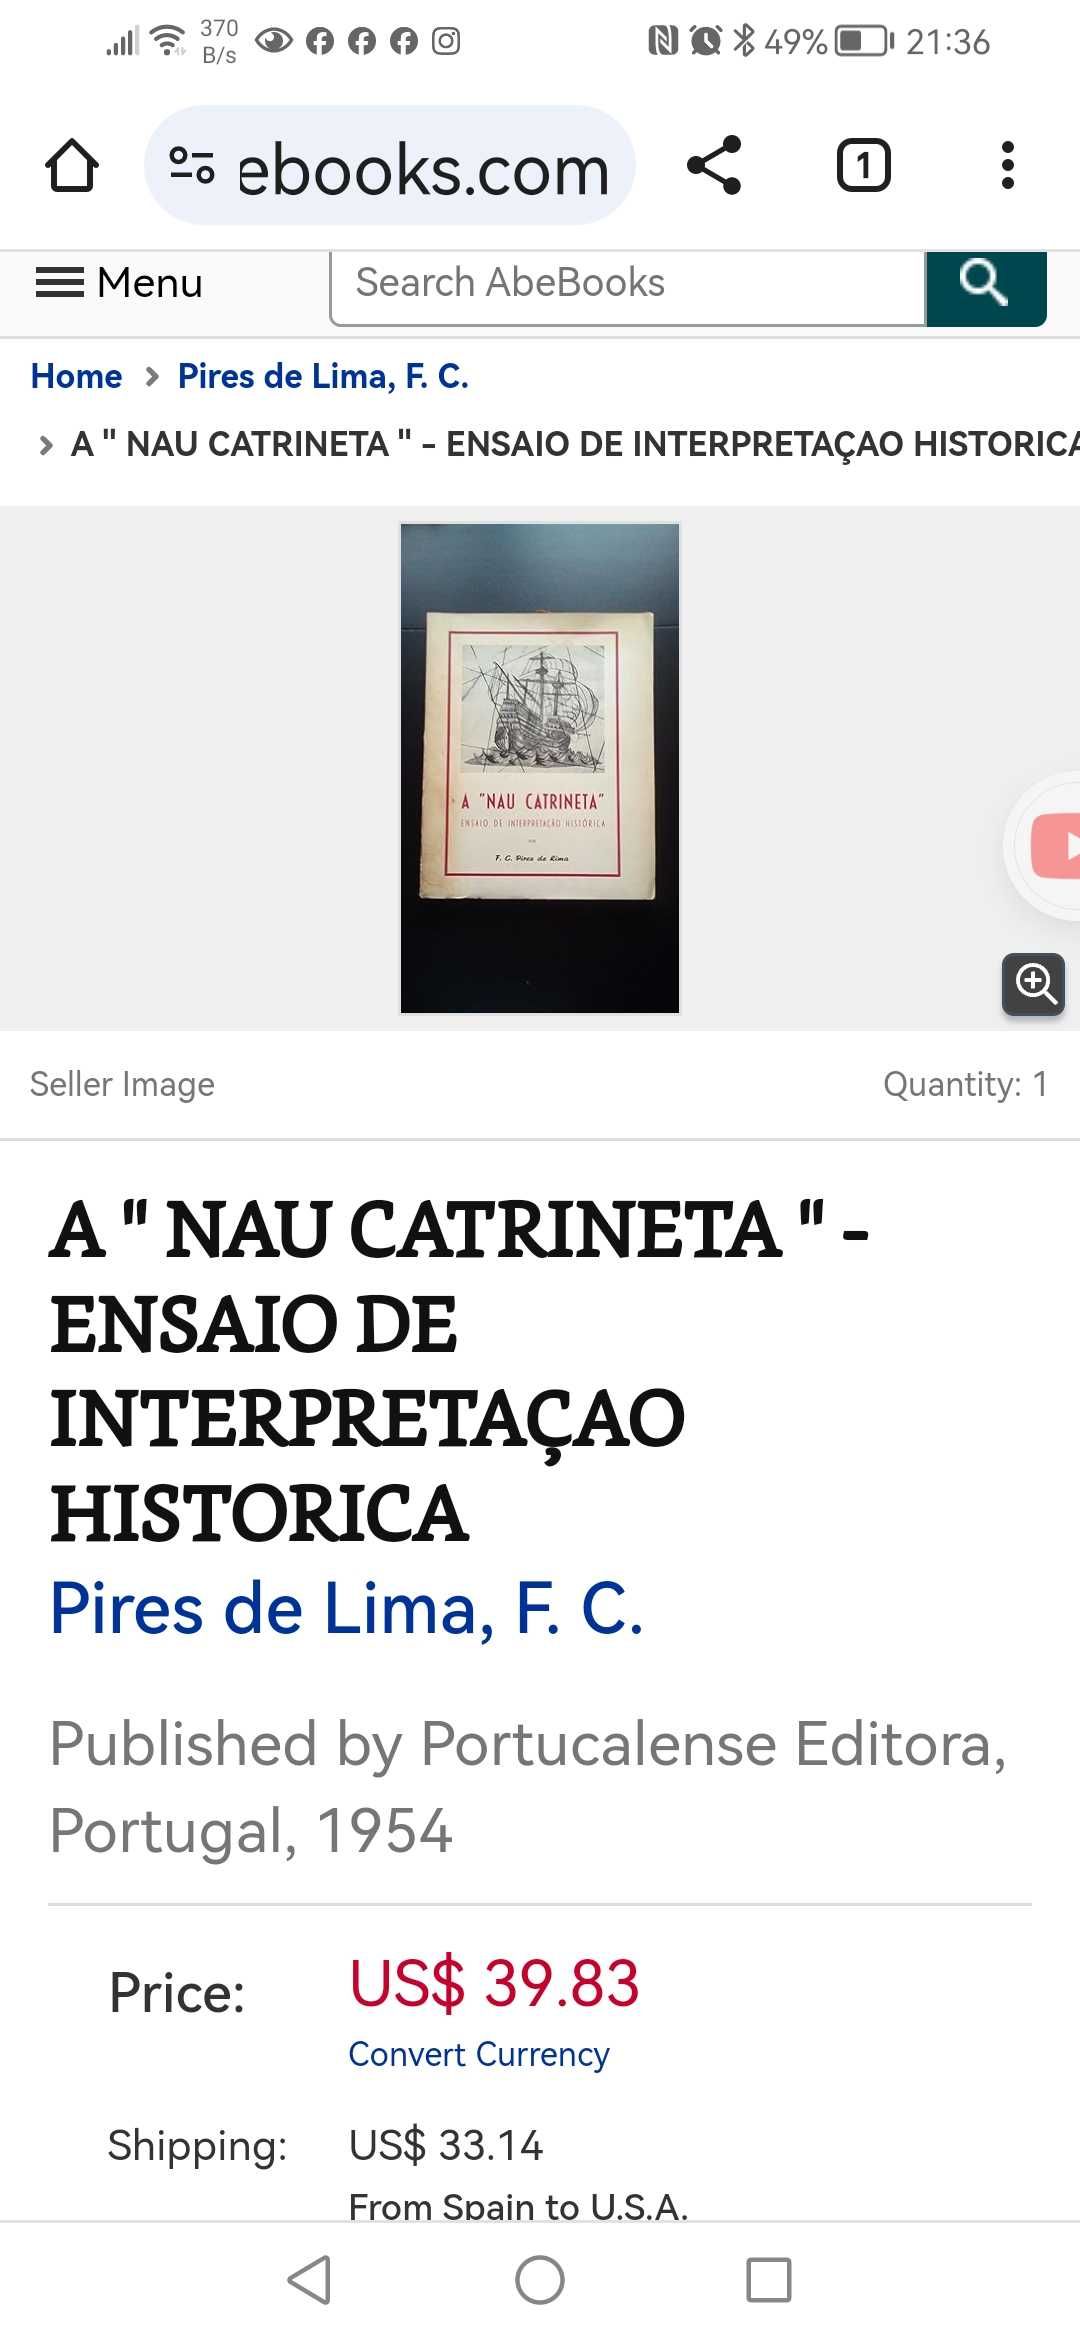 "A Nau Catarineta" Ensaio de Interpretação Histórica